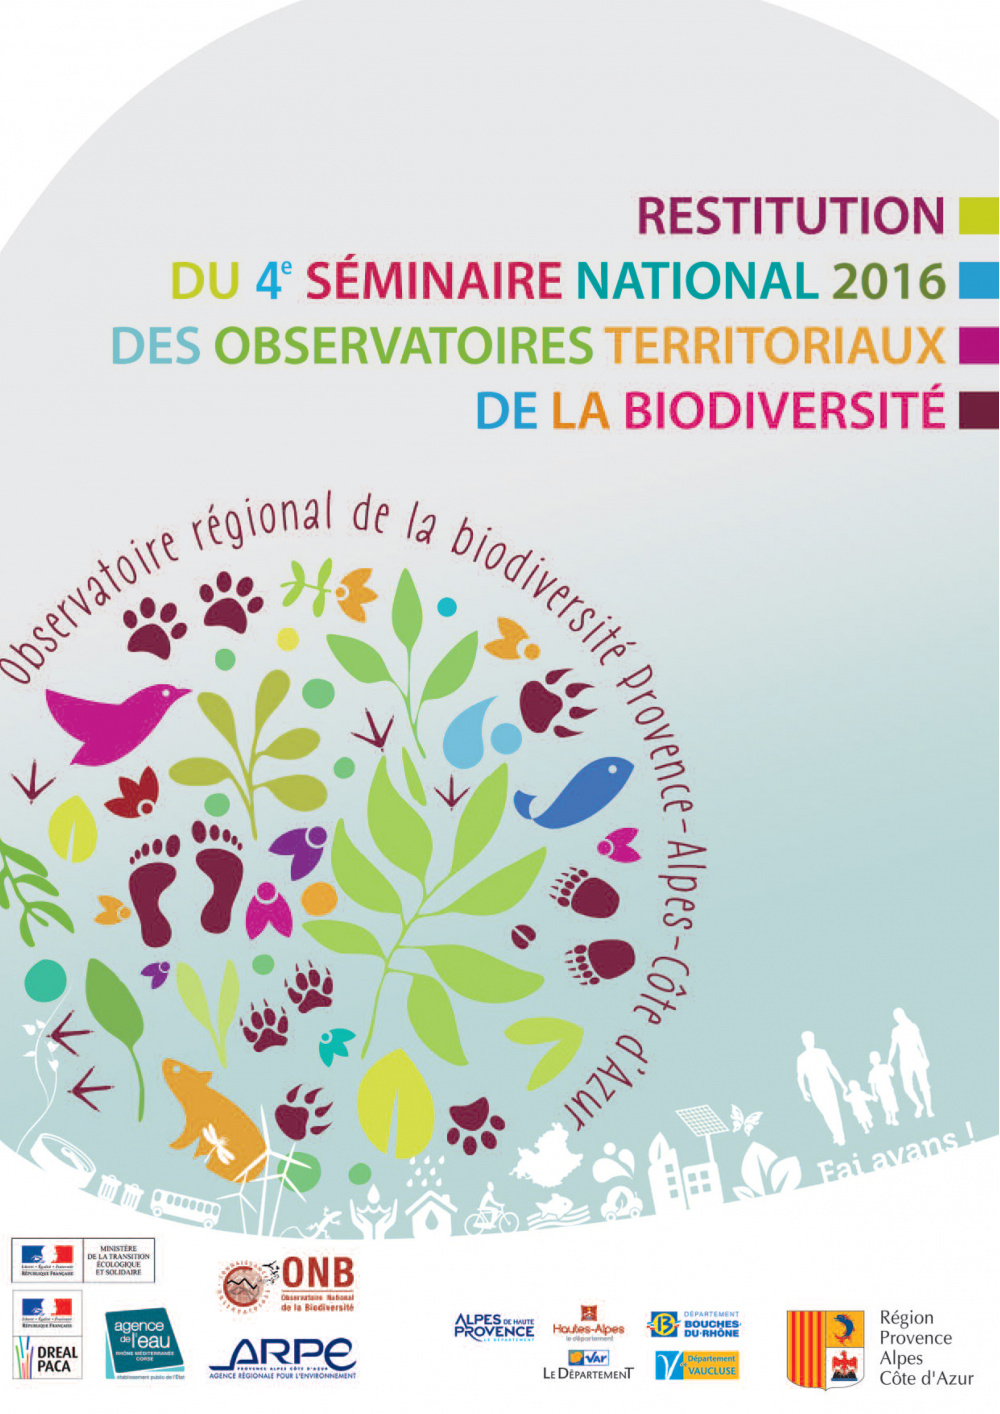 Restitution du séminaire national 2016 des observatoires territoriaux de la biodiversité